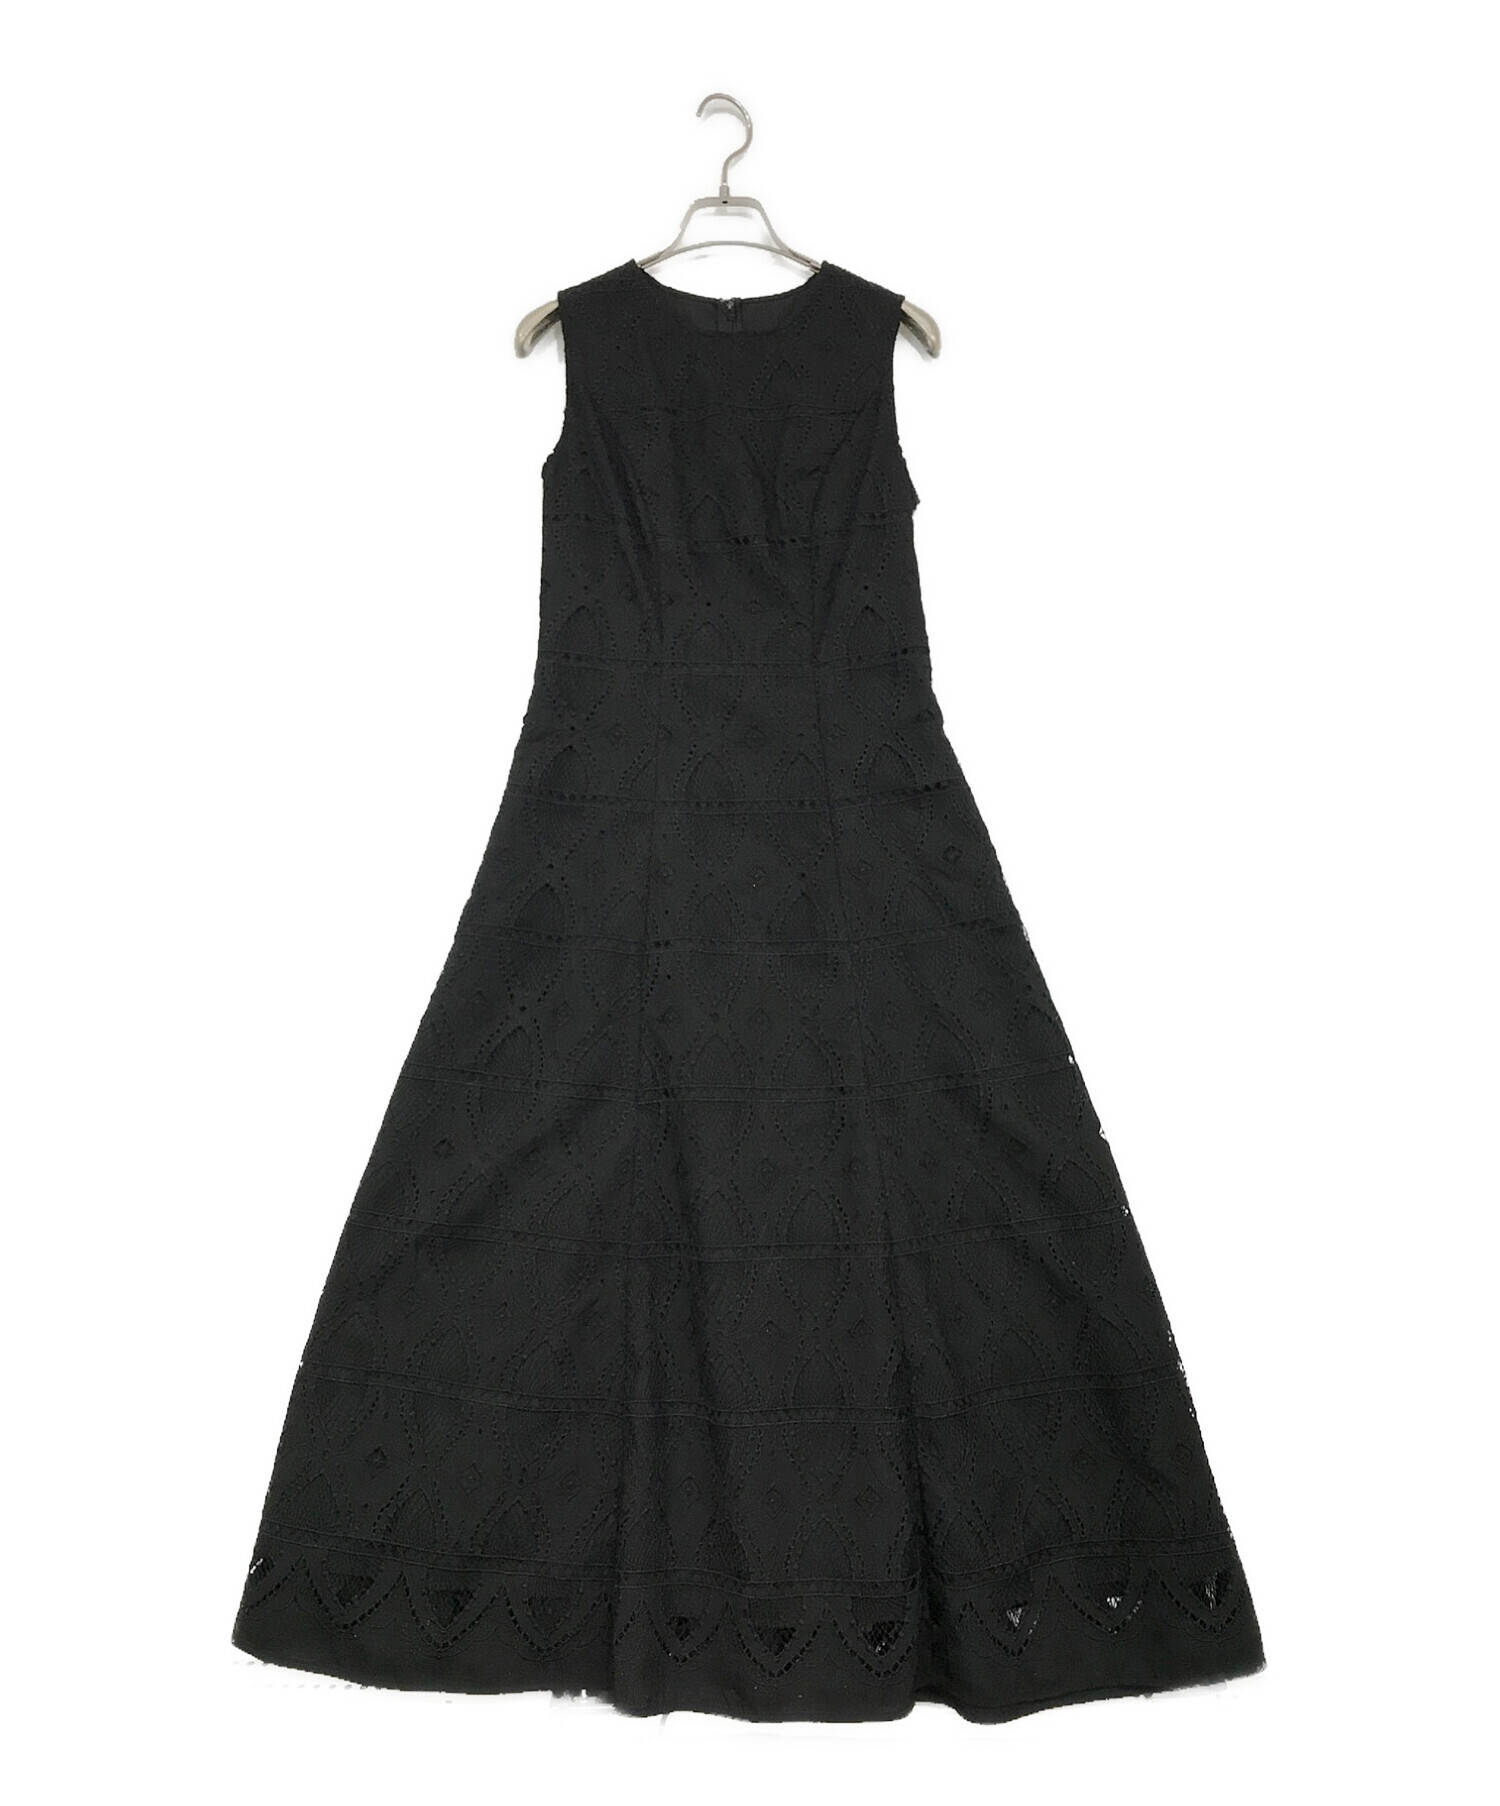 HER LIP TO (ハーリップトゥ) Saint Germain Lace Dress ブラック サイズ:SIZE S